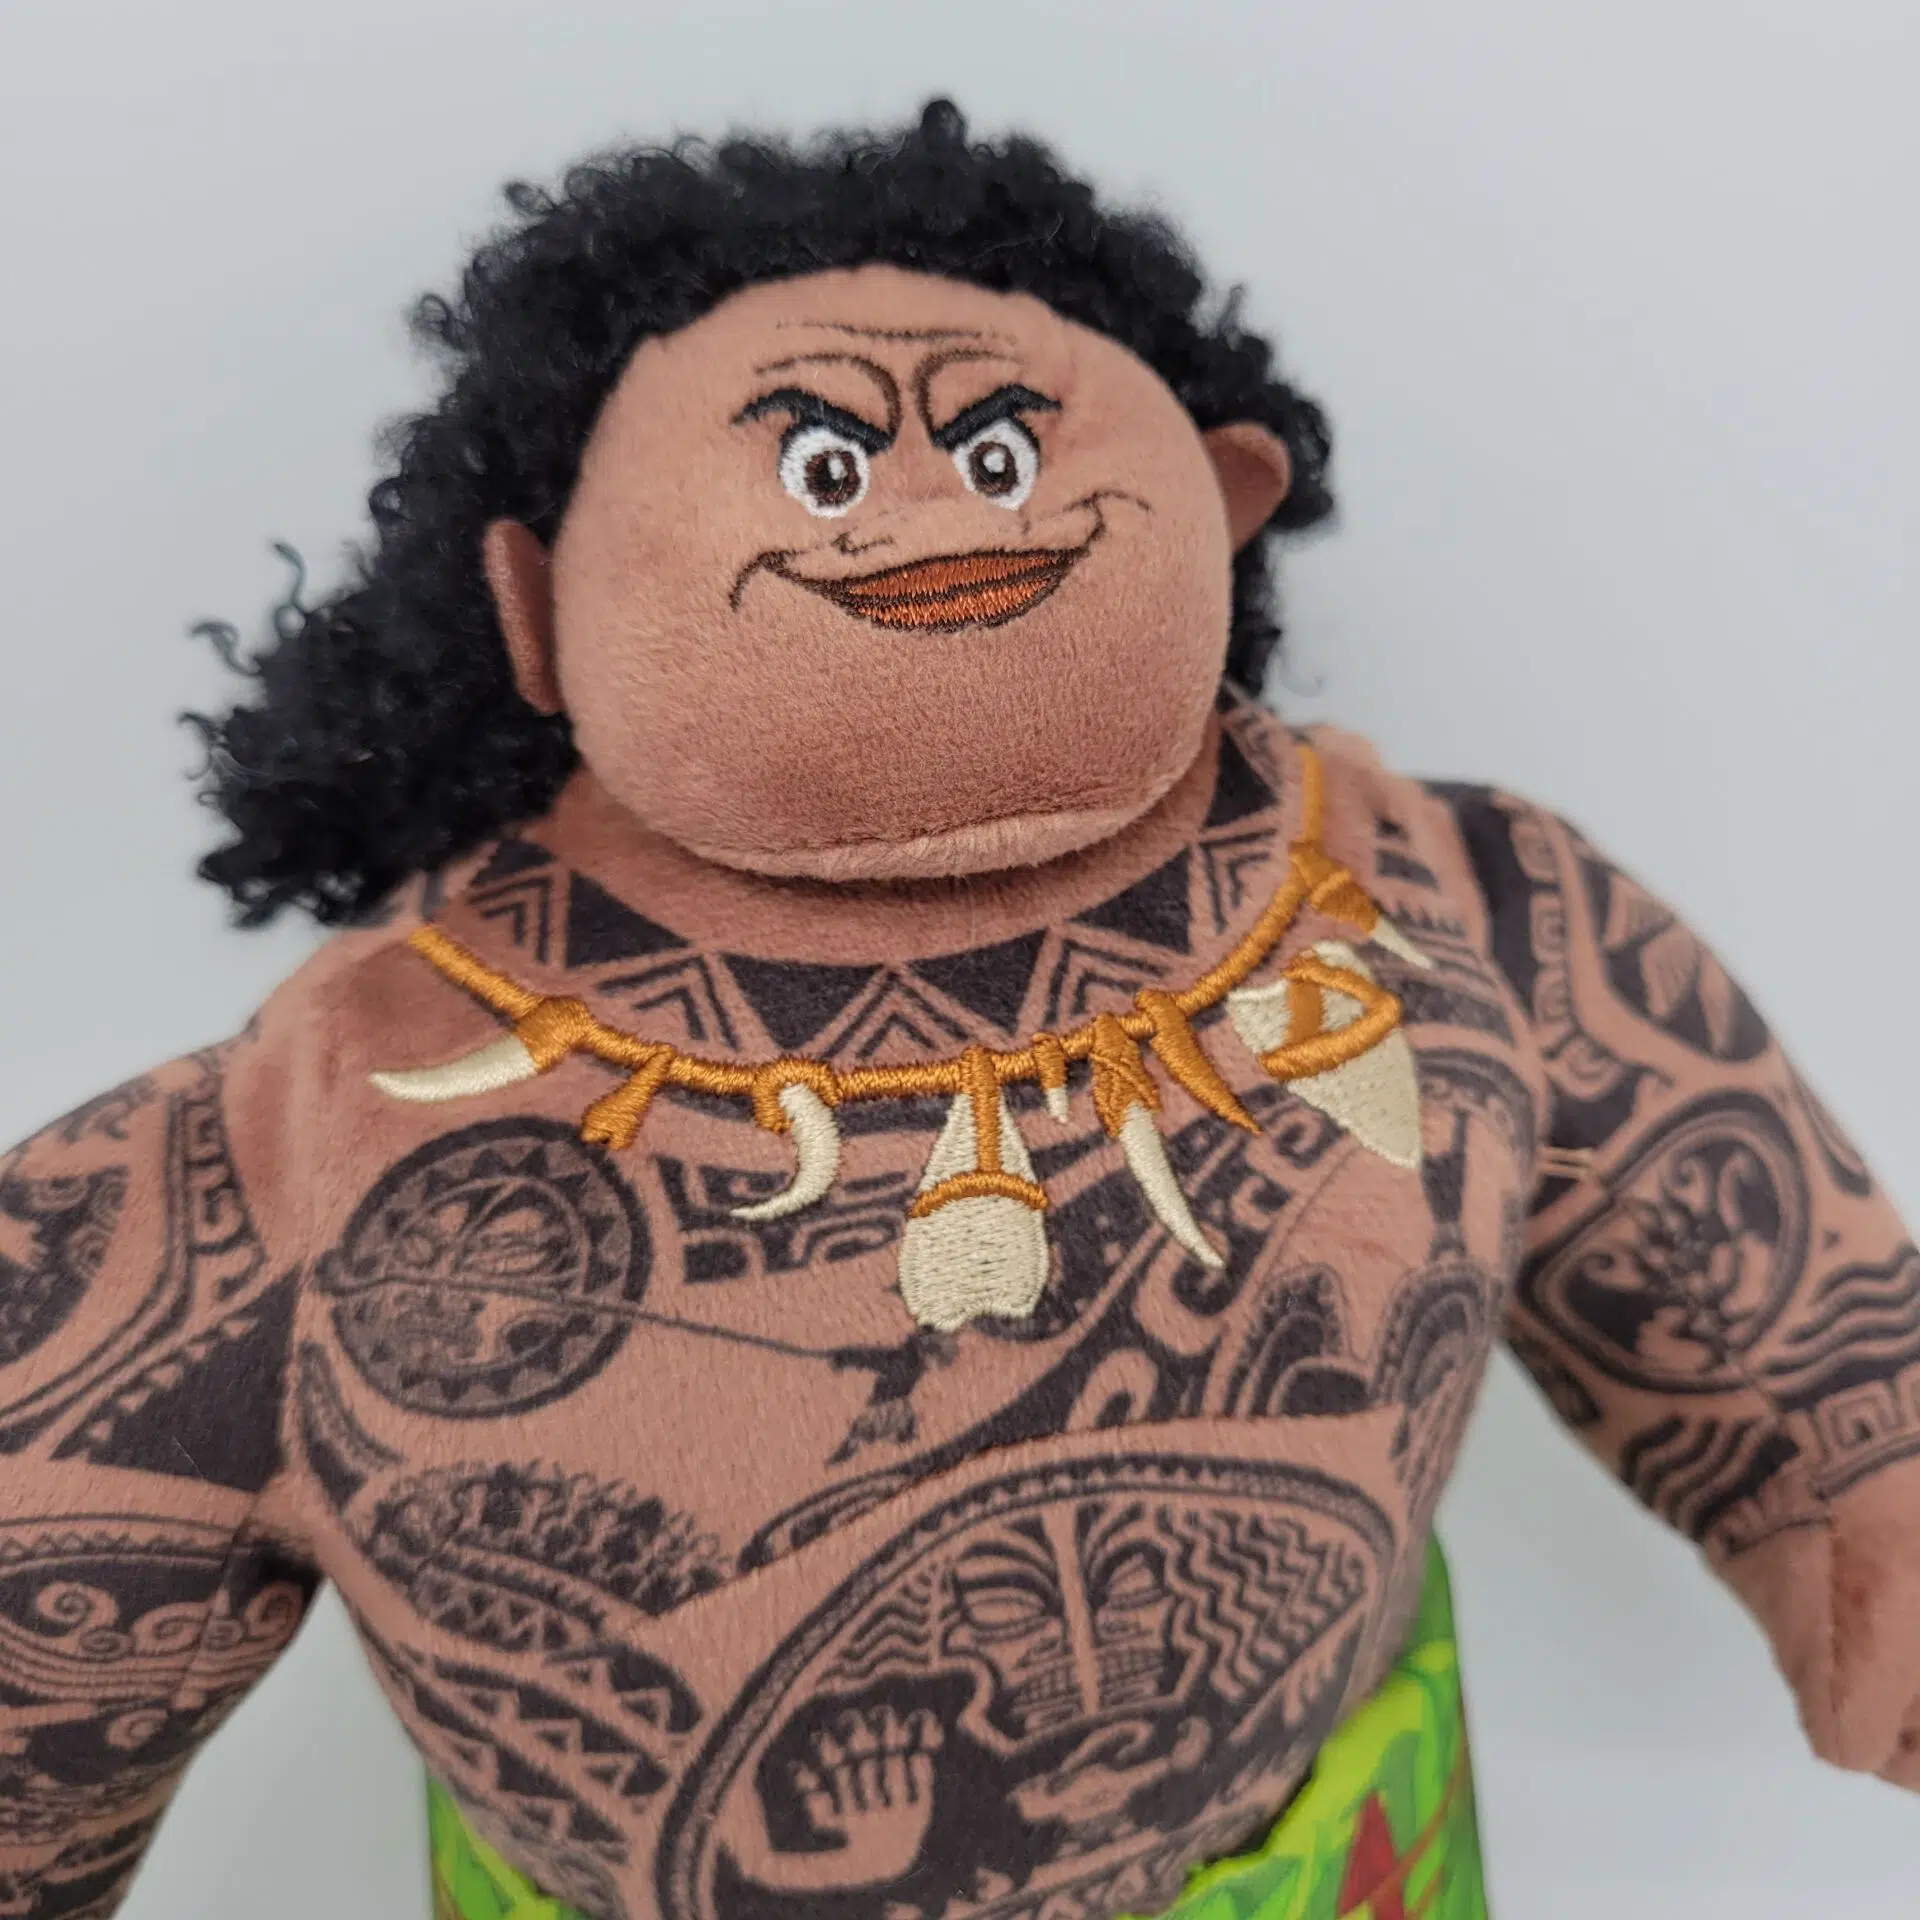 peluche du Personnage Moana Maui du dessin animé de disney on voit sa tête et son buste entièrement tatoué